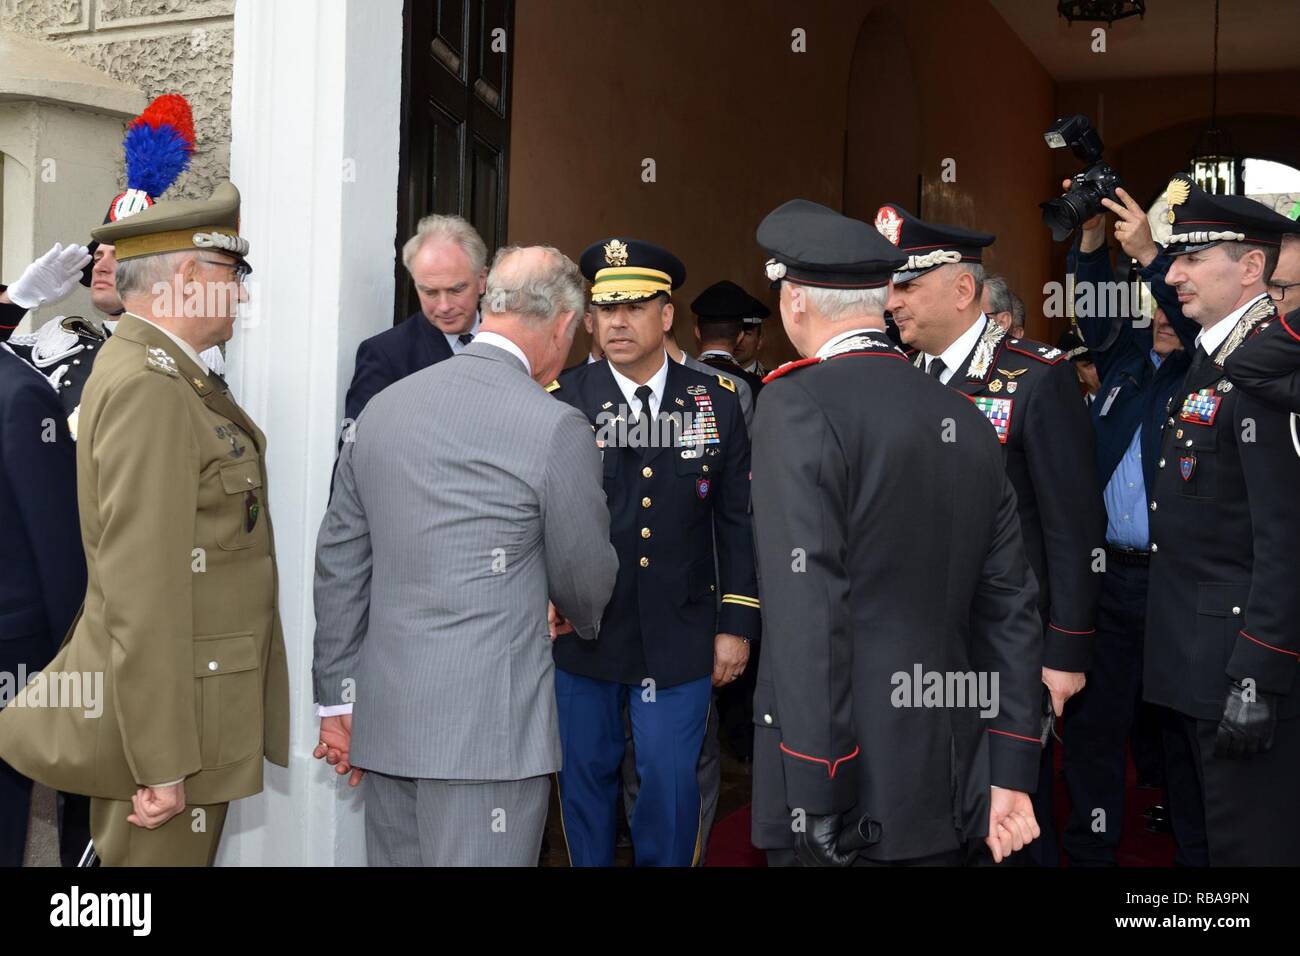 Su Alteza Real, el Príncipe Carlos, Príncipe de Gales, cumple el Coronel del Ejército estadounidense CoESPU Darío S. Gallegos, director adjunto, durante la visita al centro de excelencia para unidades de policía de estabilidad (CoESPU) de Vicenza, Italia, 1 de abril de 2017. Foto de stock